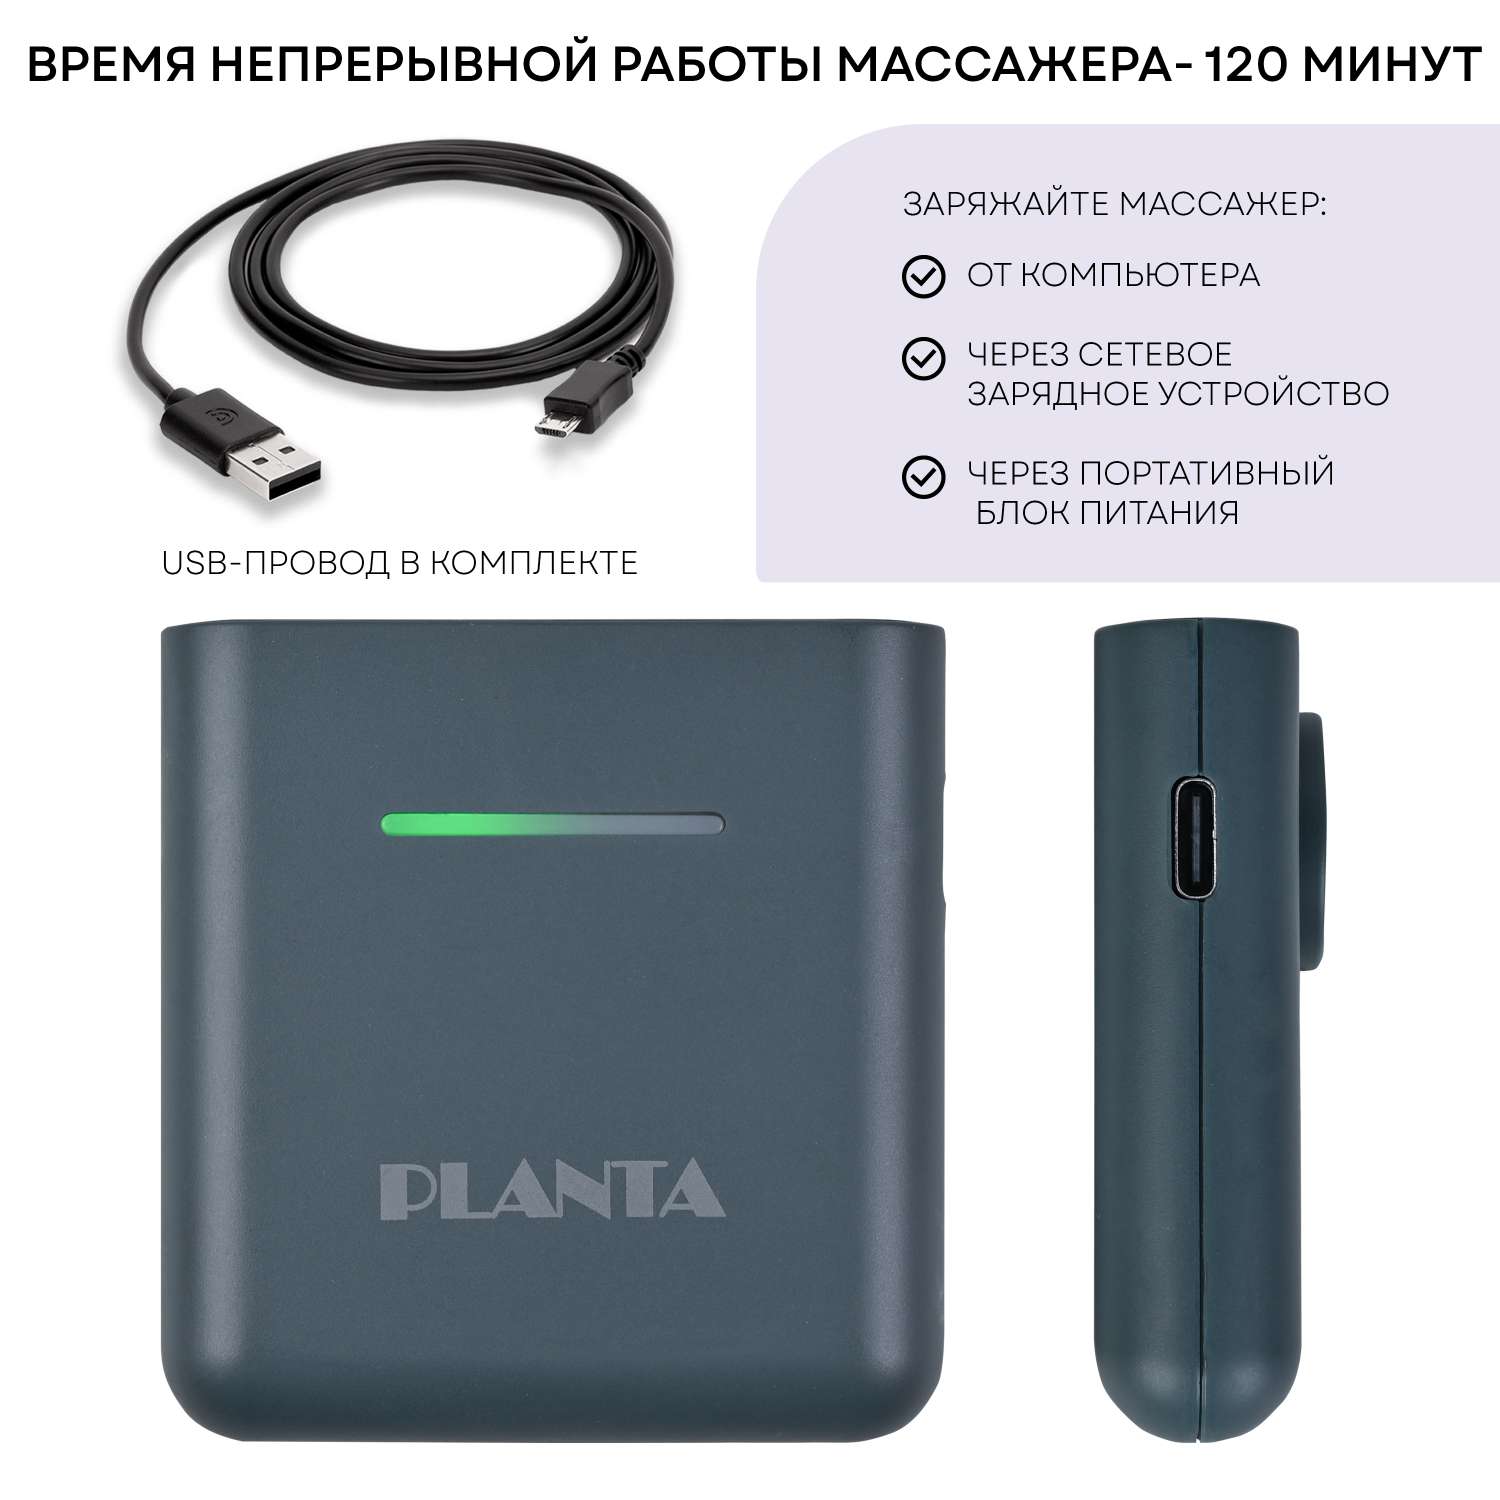 Пояс-миостимулятор для пресса Planta EMS-600 тренажер мышц пресса с подогревом ультратонкий - фото 13